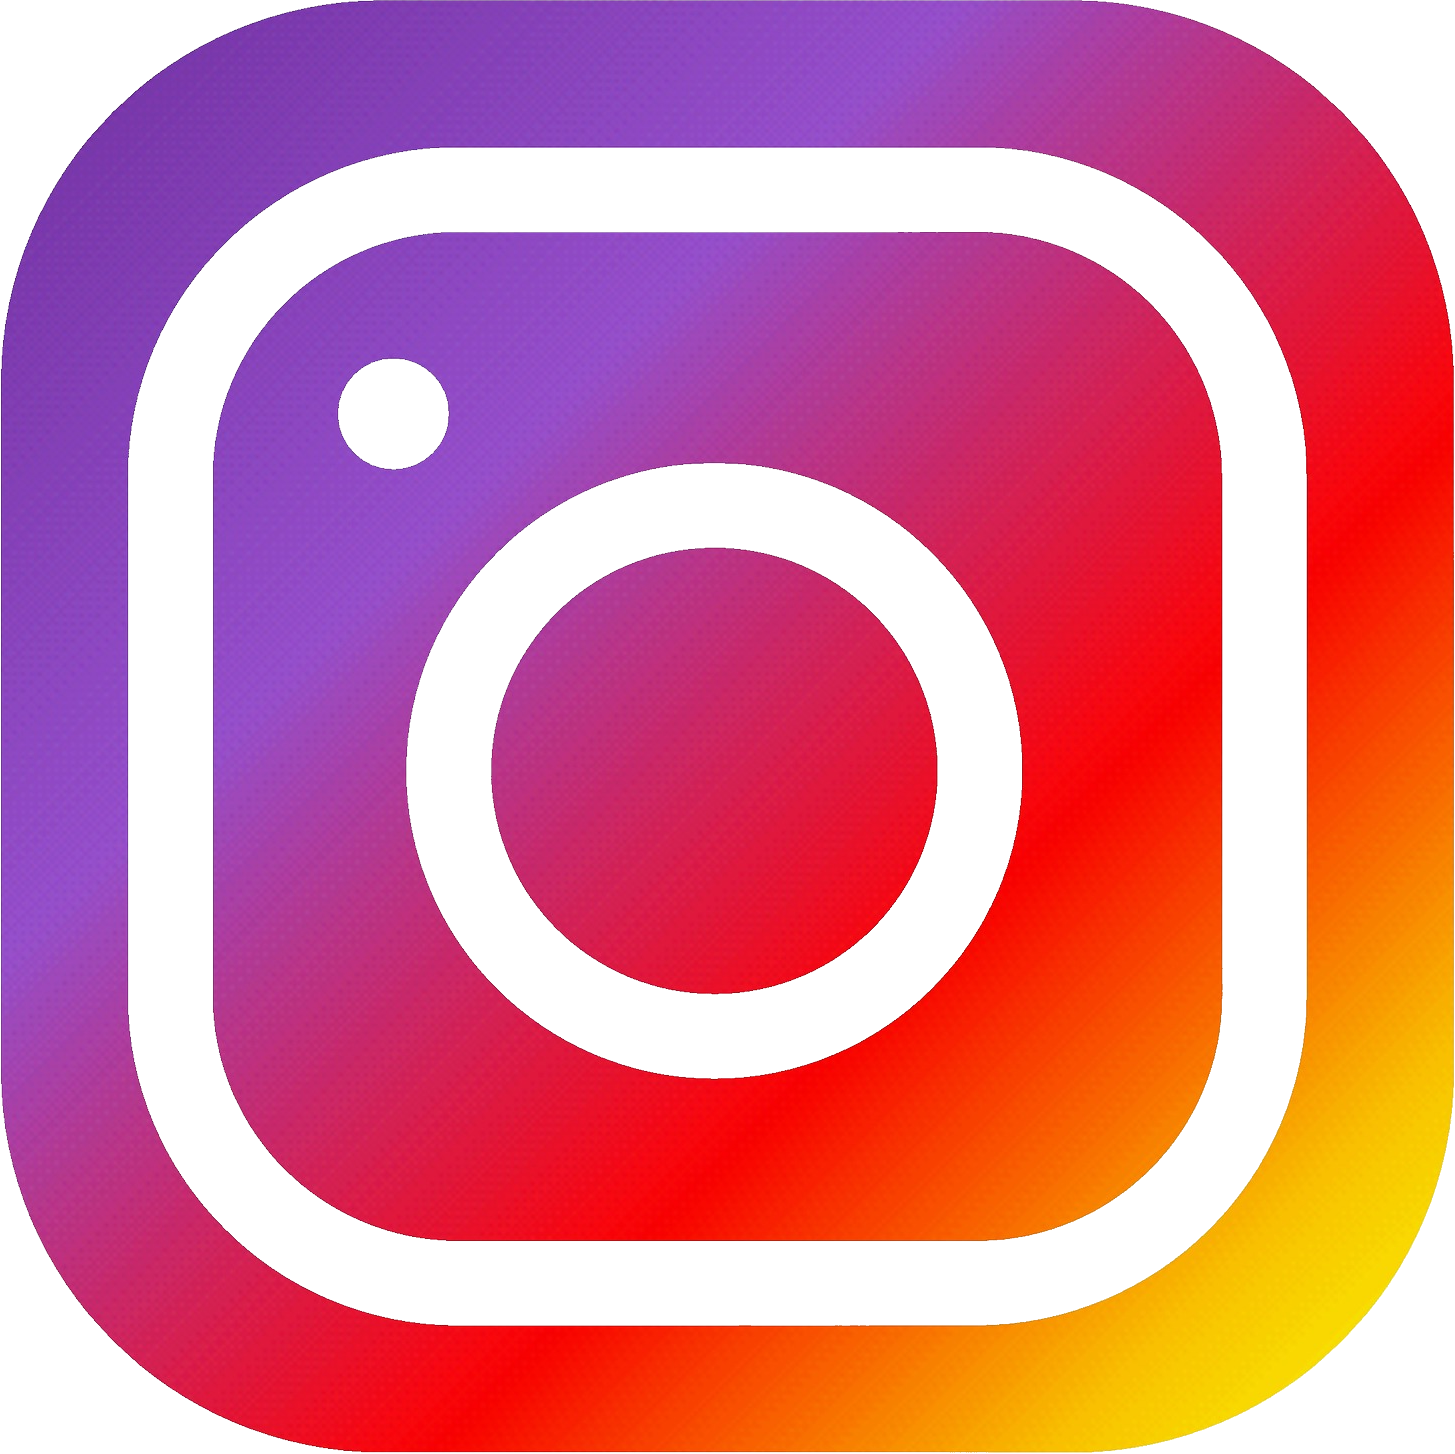 Instagram的标志和链接到梦想俱乐部